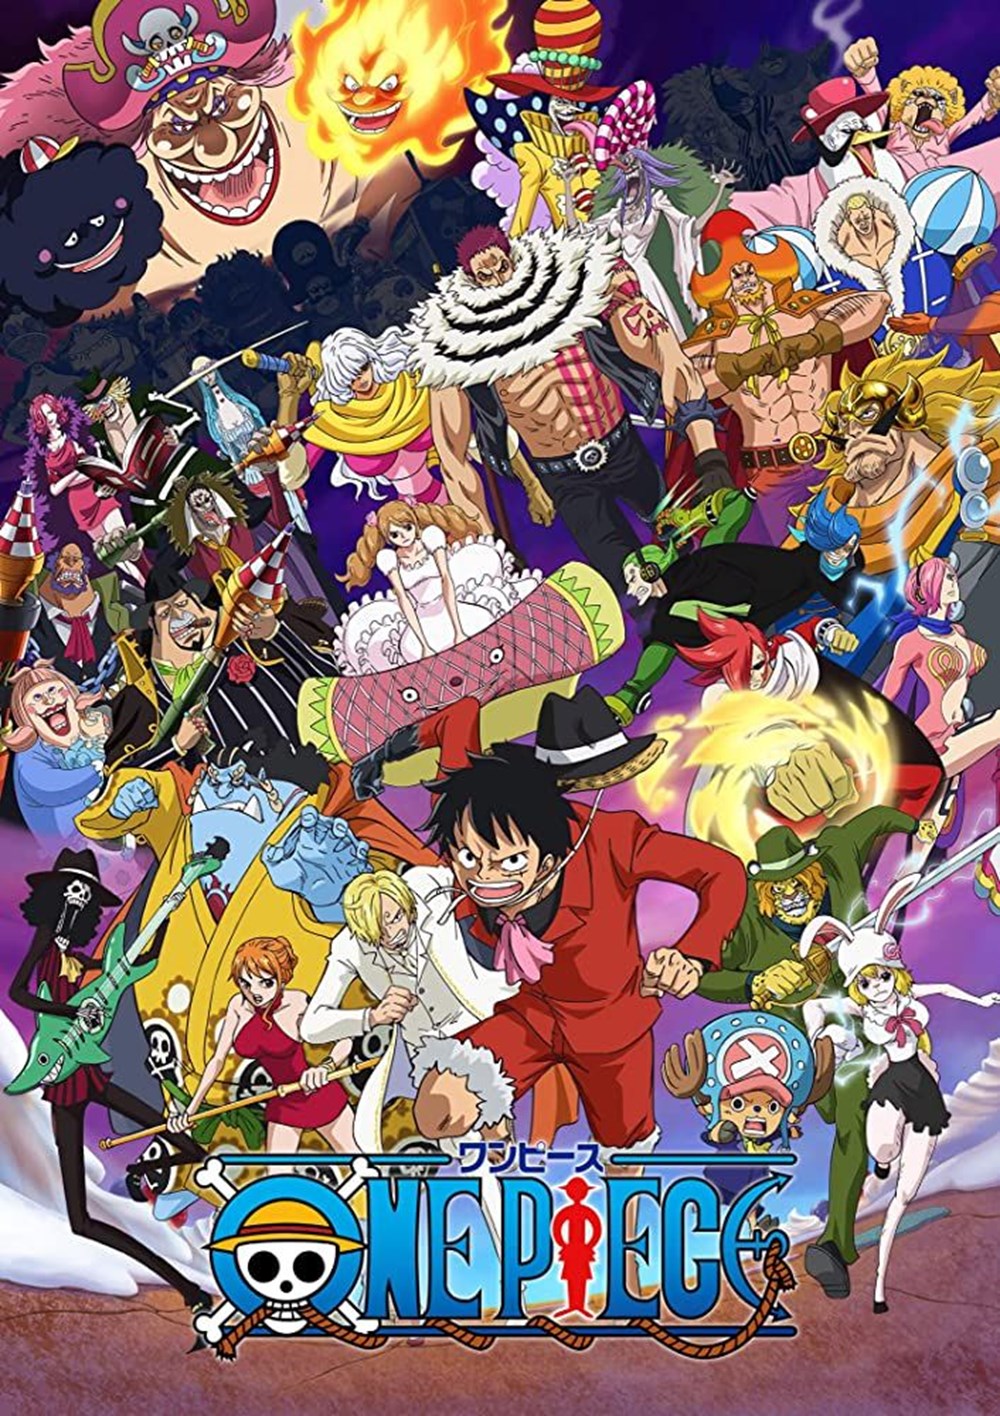 En iyi animeler (IMDb Puan sırasına göre) - 15